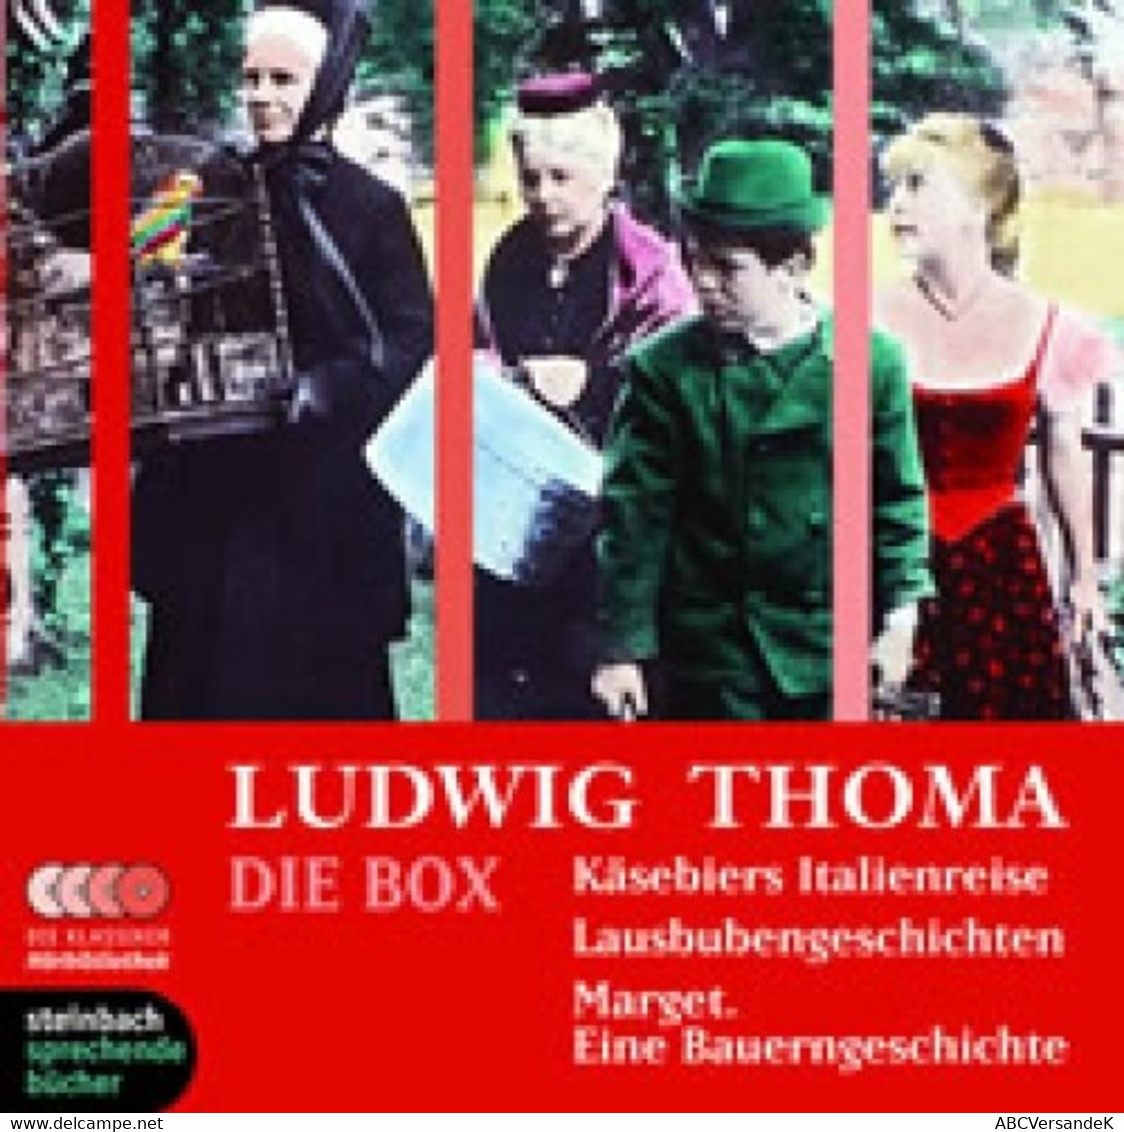 Ludwig Thoma - Die Box: Käsebiers Italienreise / Lausbubengeschichten / Marget. Eine Bauerngeschichte. 5 CDs - CDs